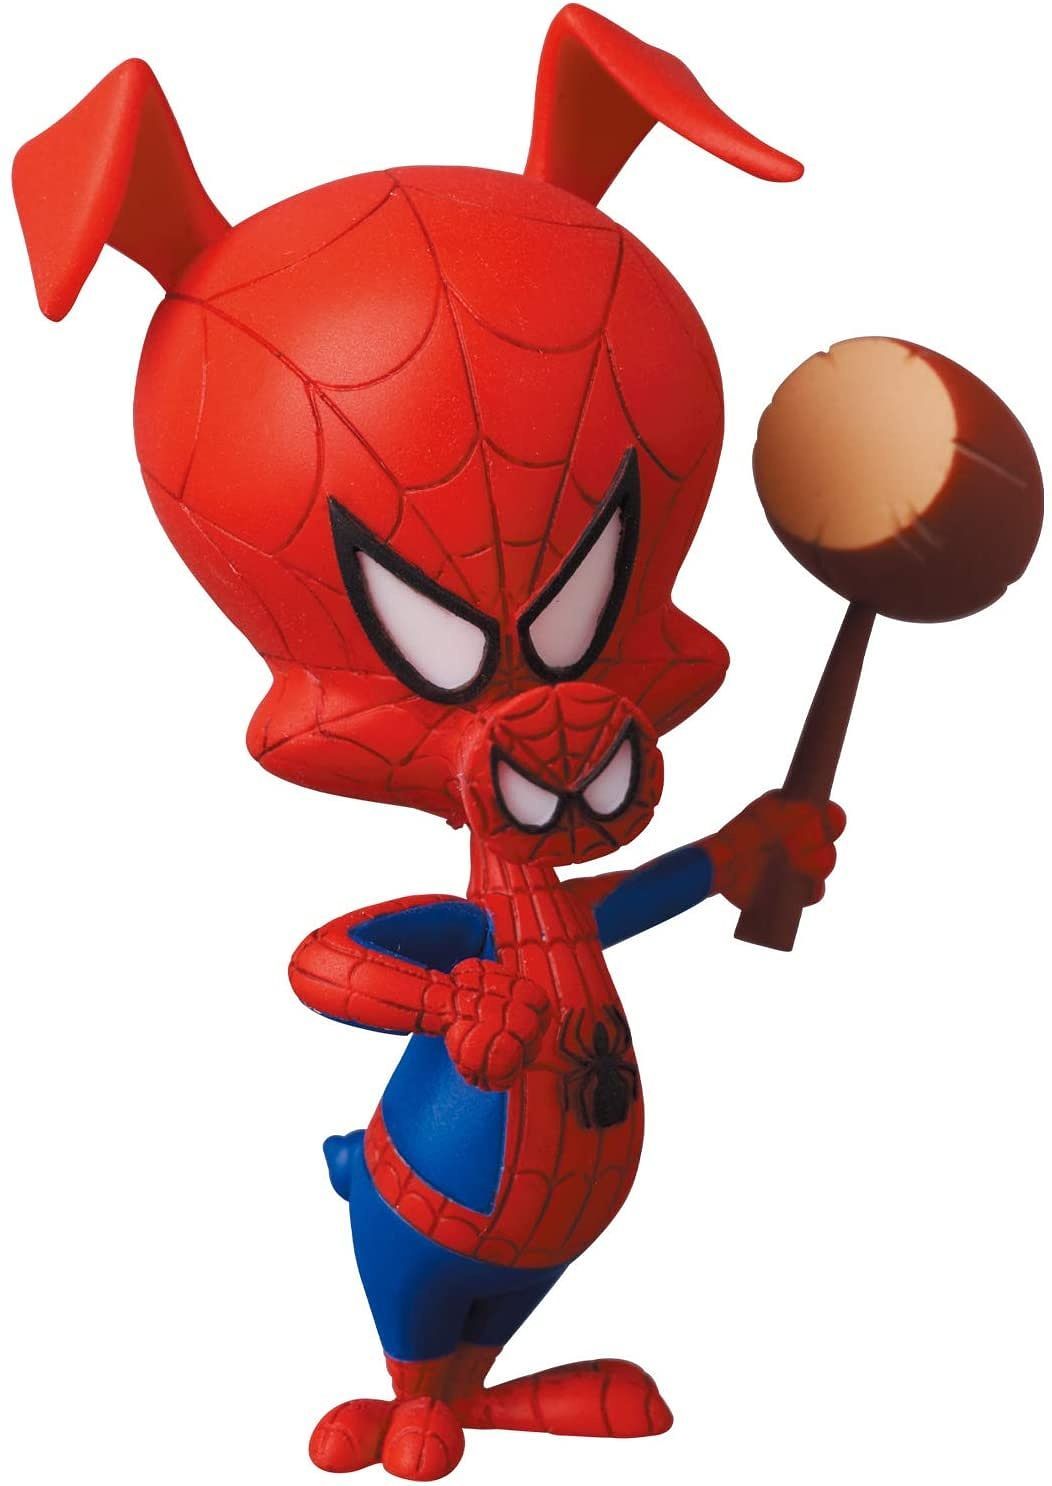 Medicom - MAFEX No. 134 - Spider-Man: Into the Spider-Verse - Spider-Gwen &amp; Spider-Ham - Marvelous Toys